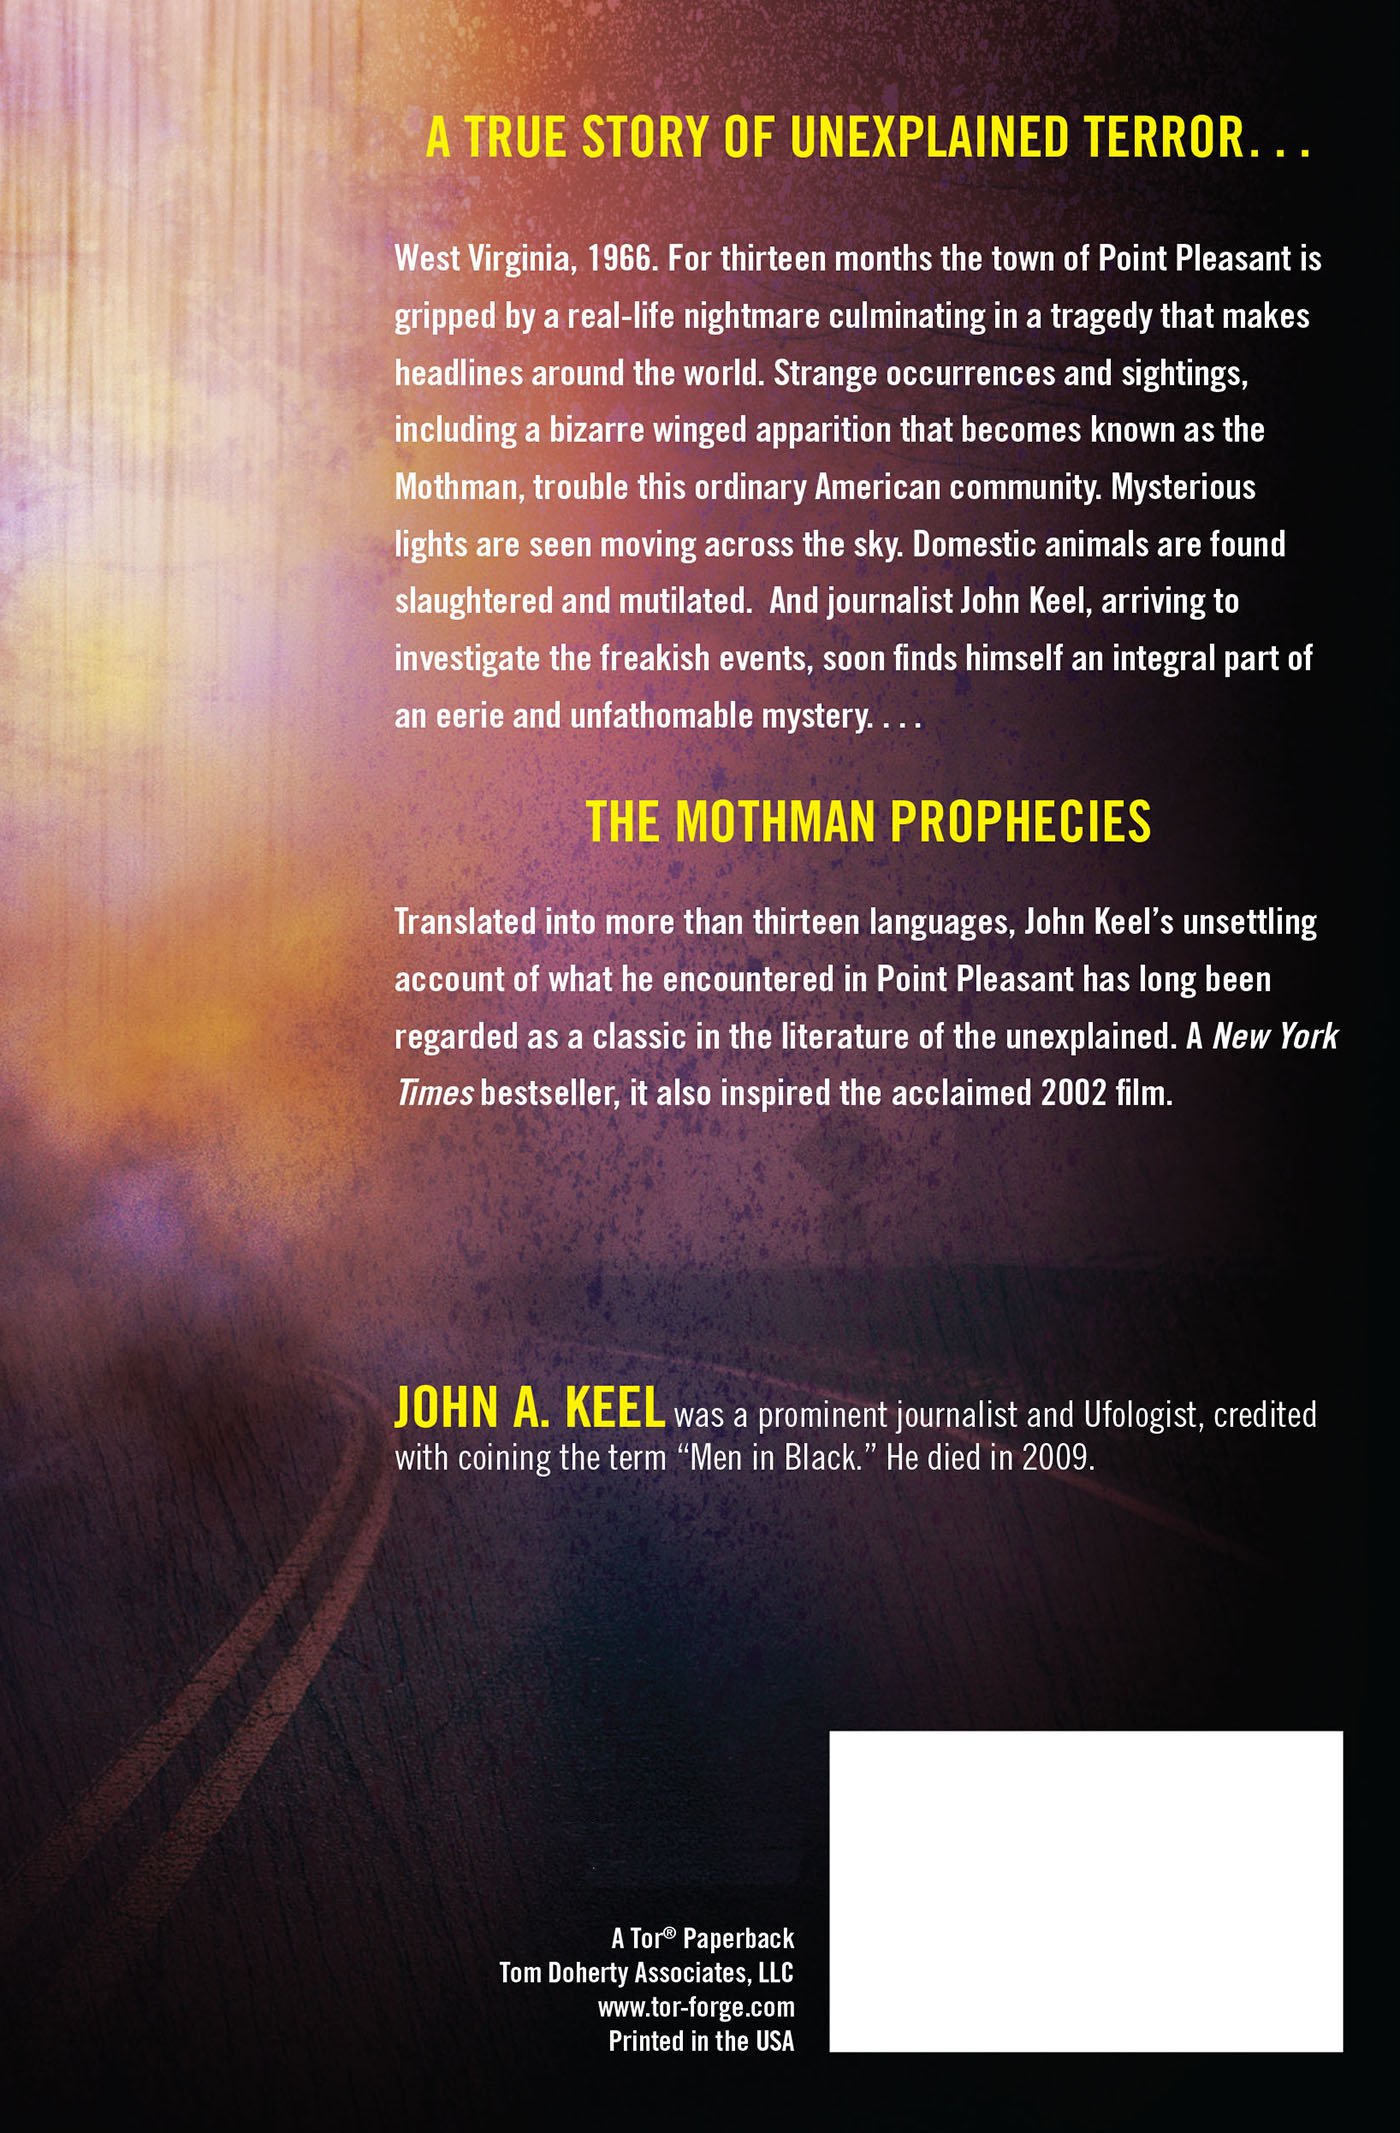 The Mothman Prophecies #10